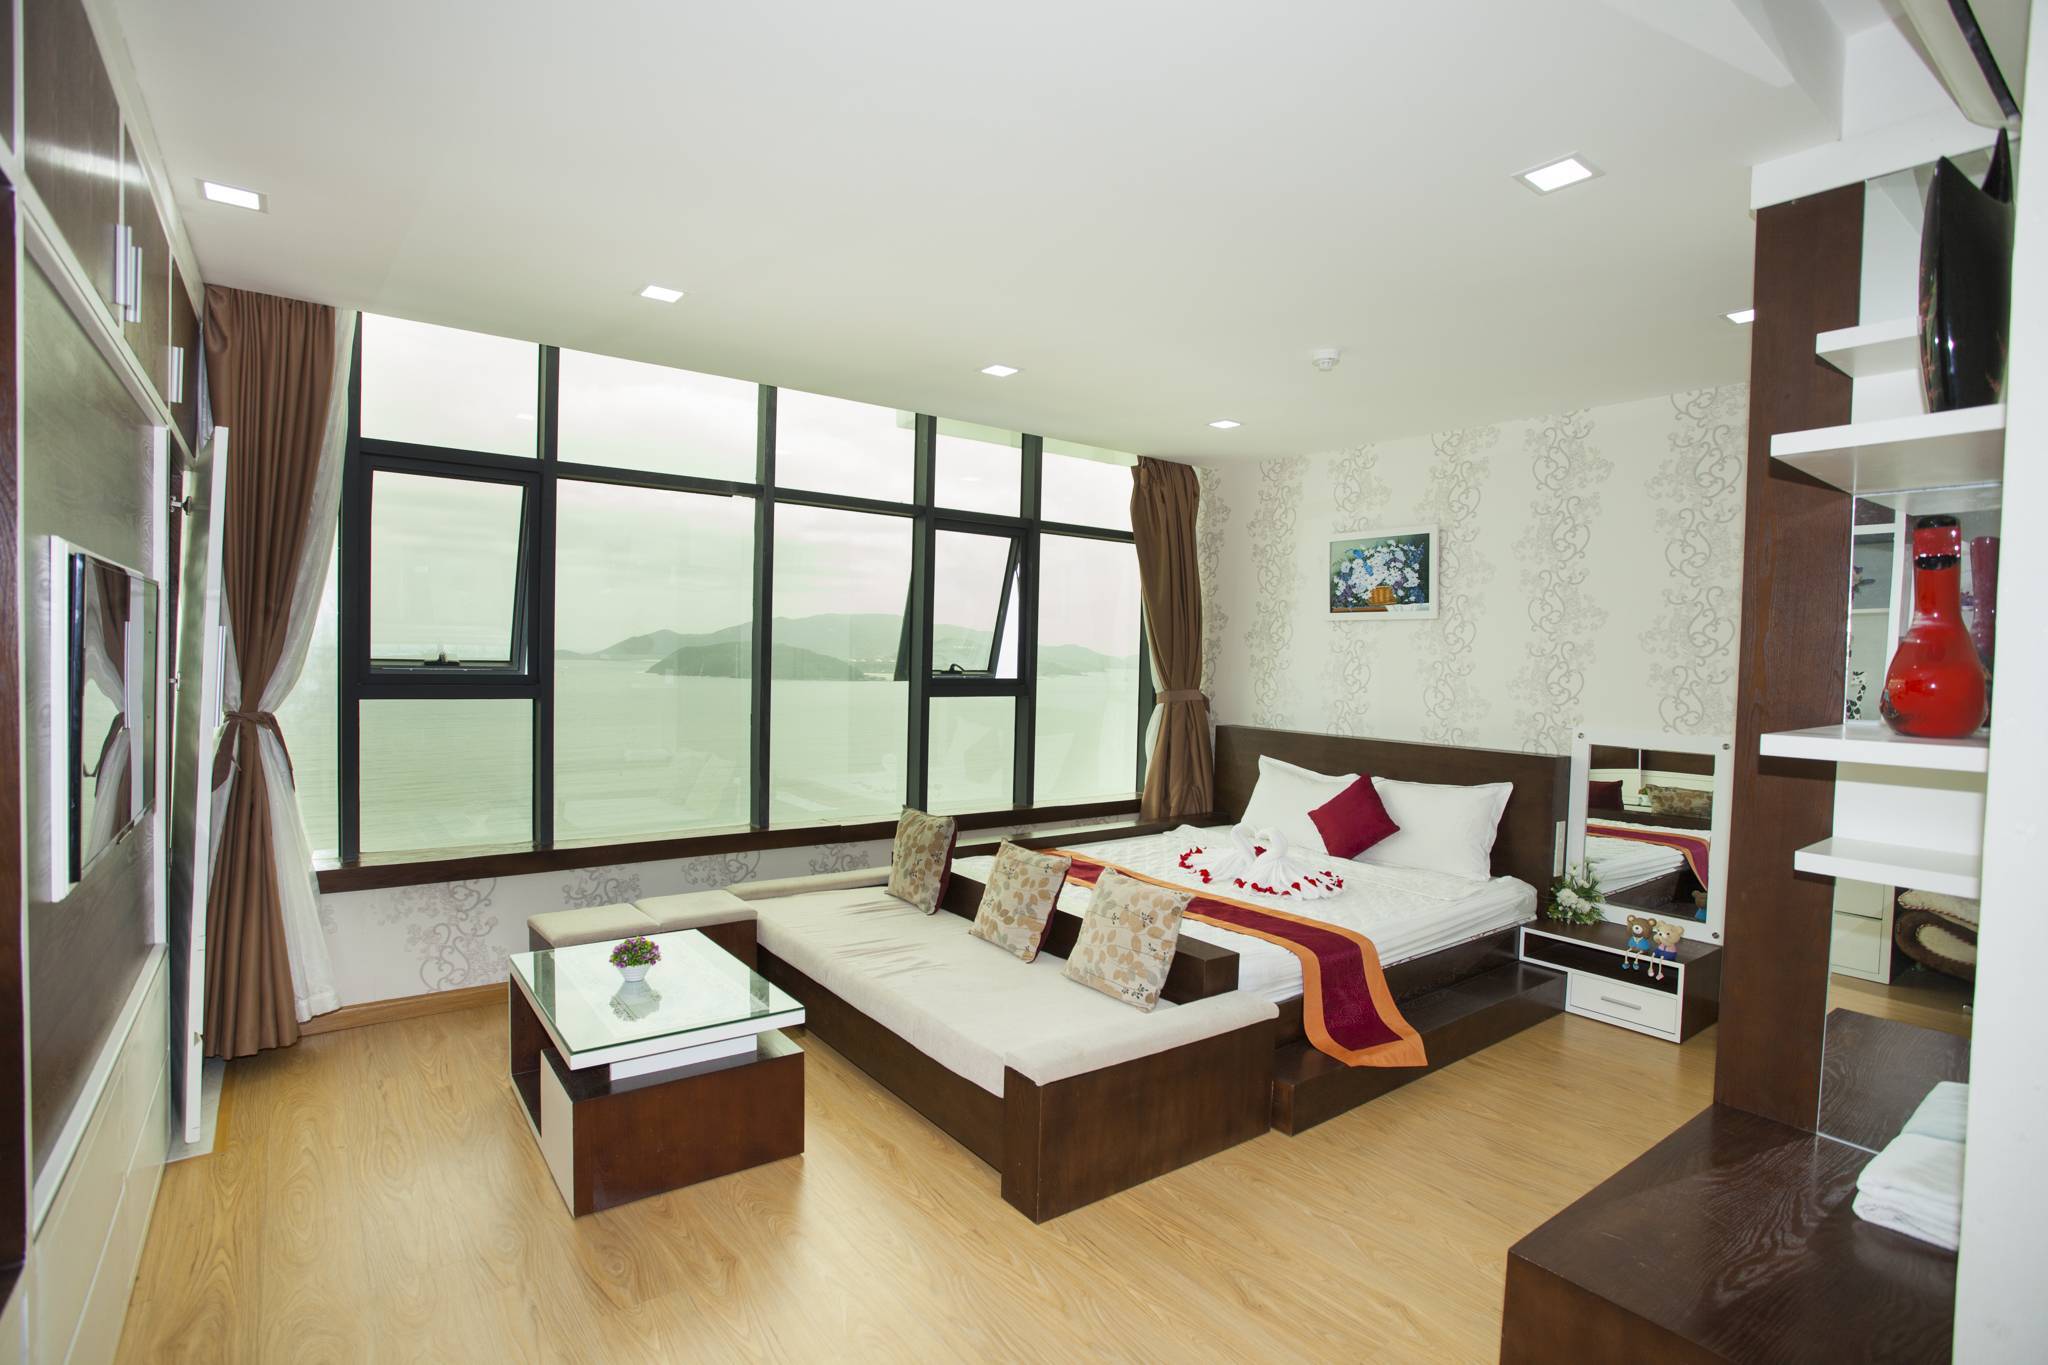 Hanoi property to rent, hanoi apartments, houses, villas rental